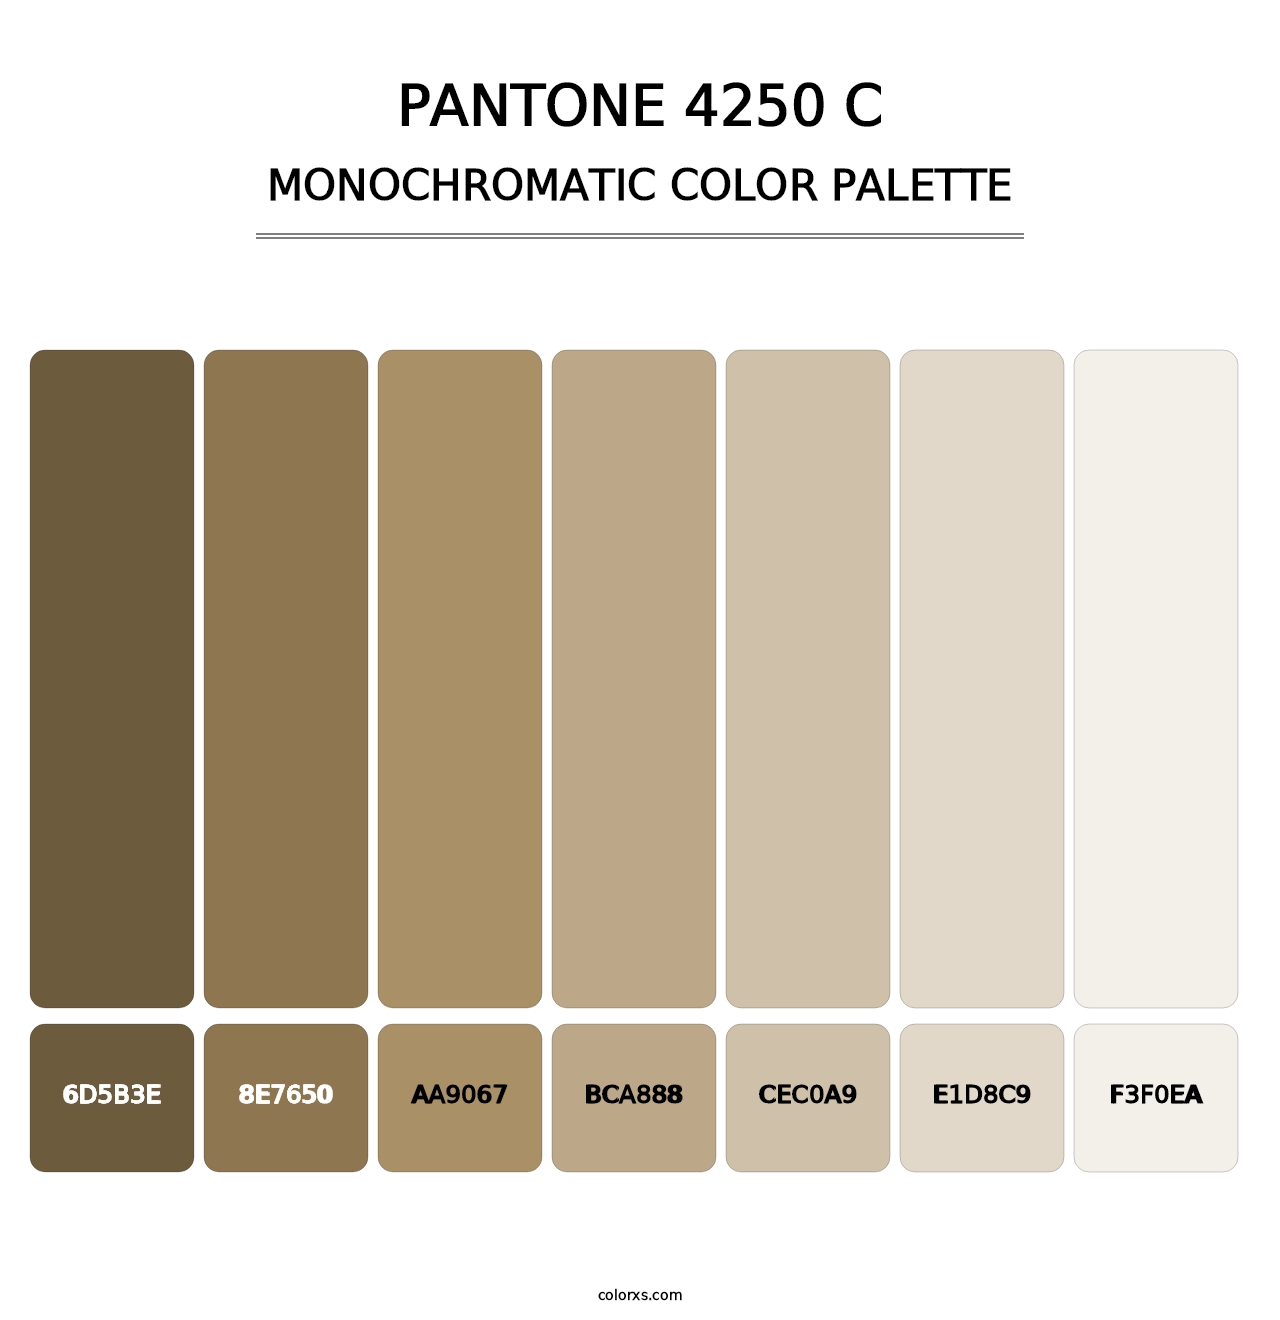 PANTONE 4250 C - Monochromatic Color Palette